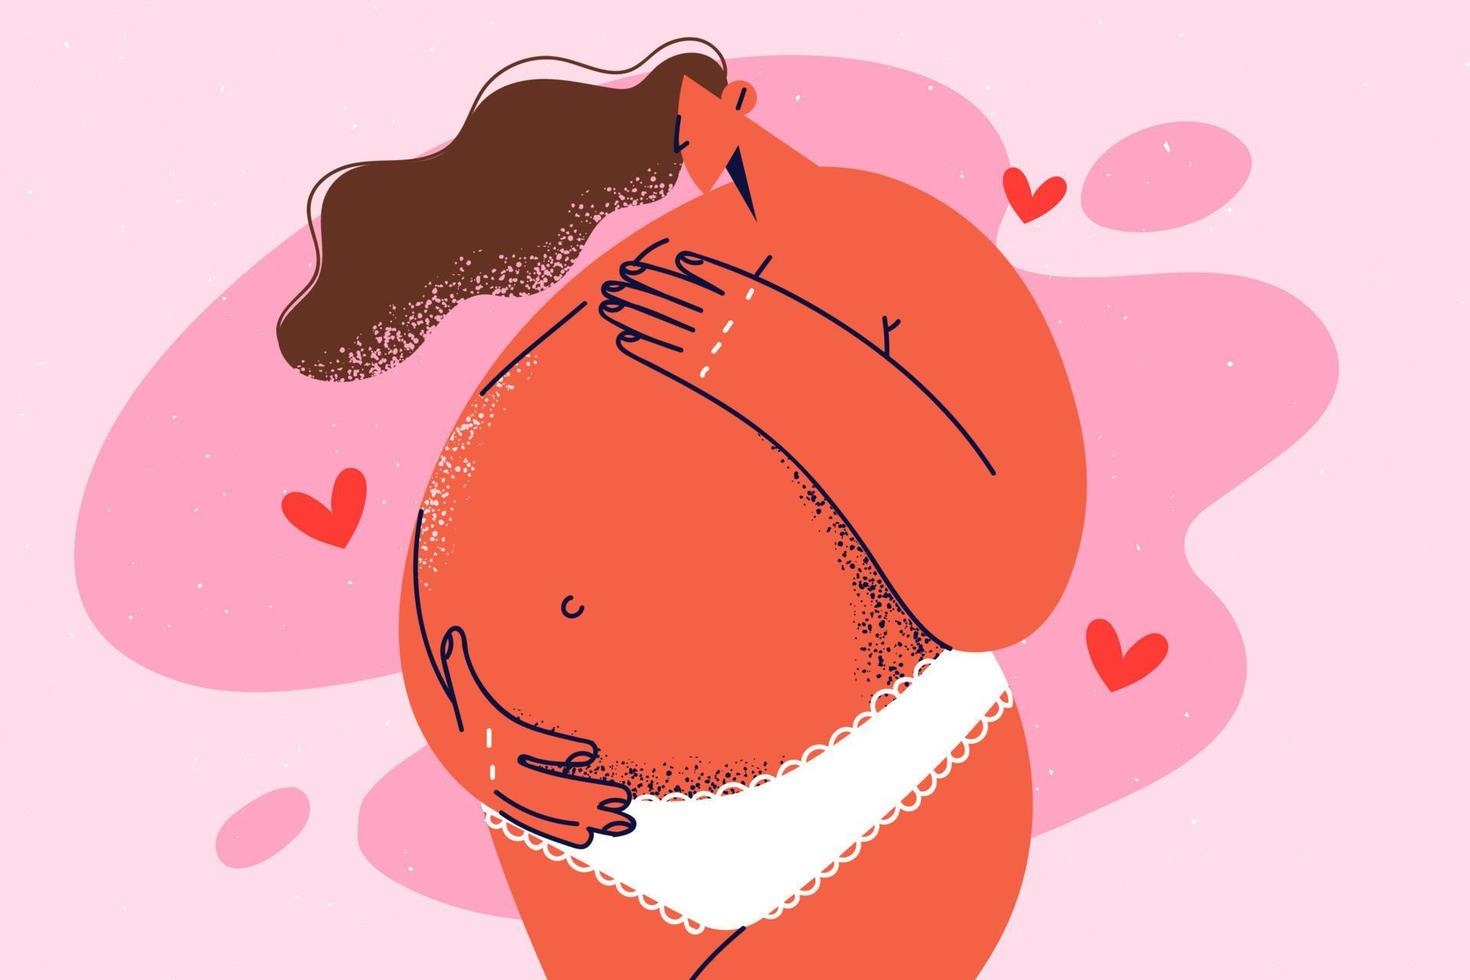 nackt Frau berühren groß Bauch aufgeregt mit Zukunft Mutterschaft. schwanger weiblich im Unterwäsche erwarten Kind. Schwangerschaft und Mutterschaft. Vektor Illustration.